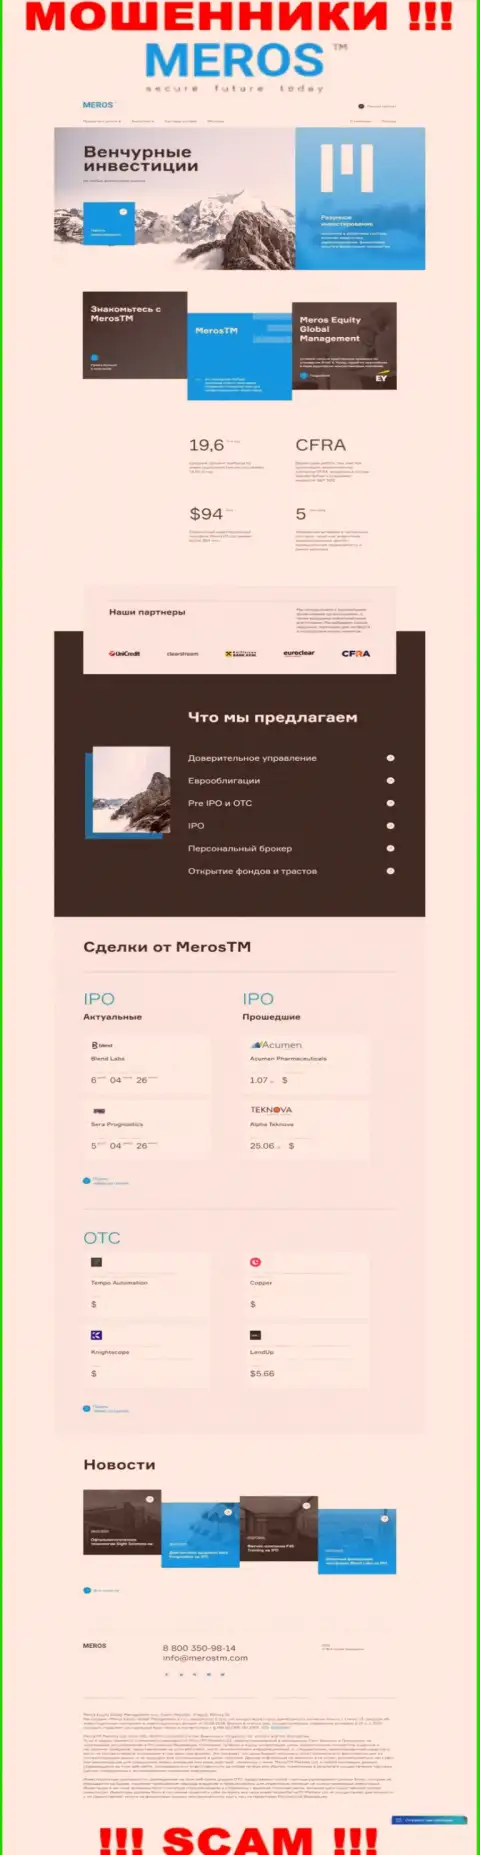 Обзор официального сервиса мошенников MerosTM